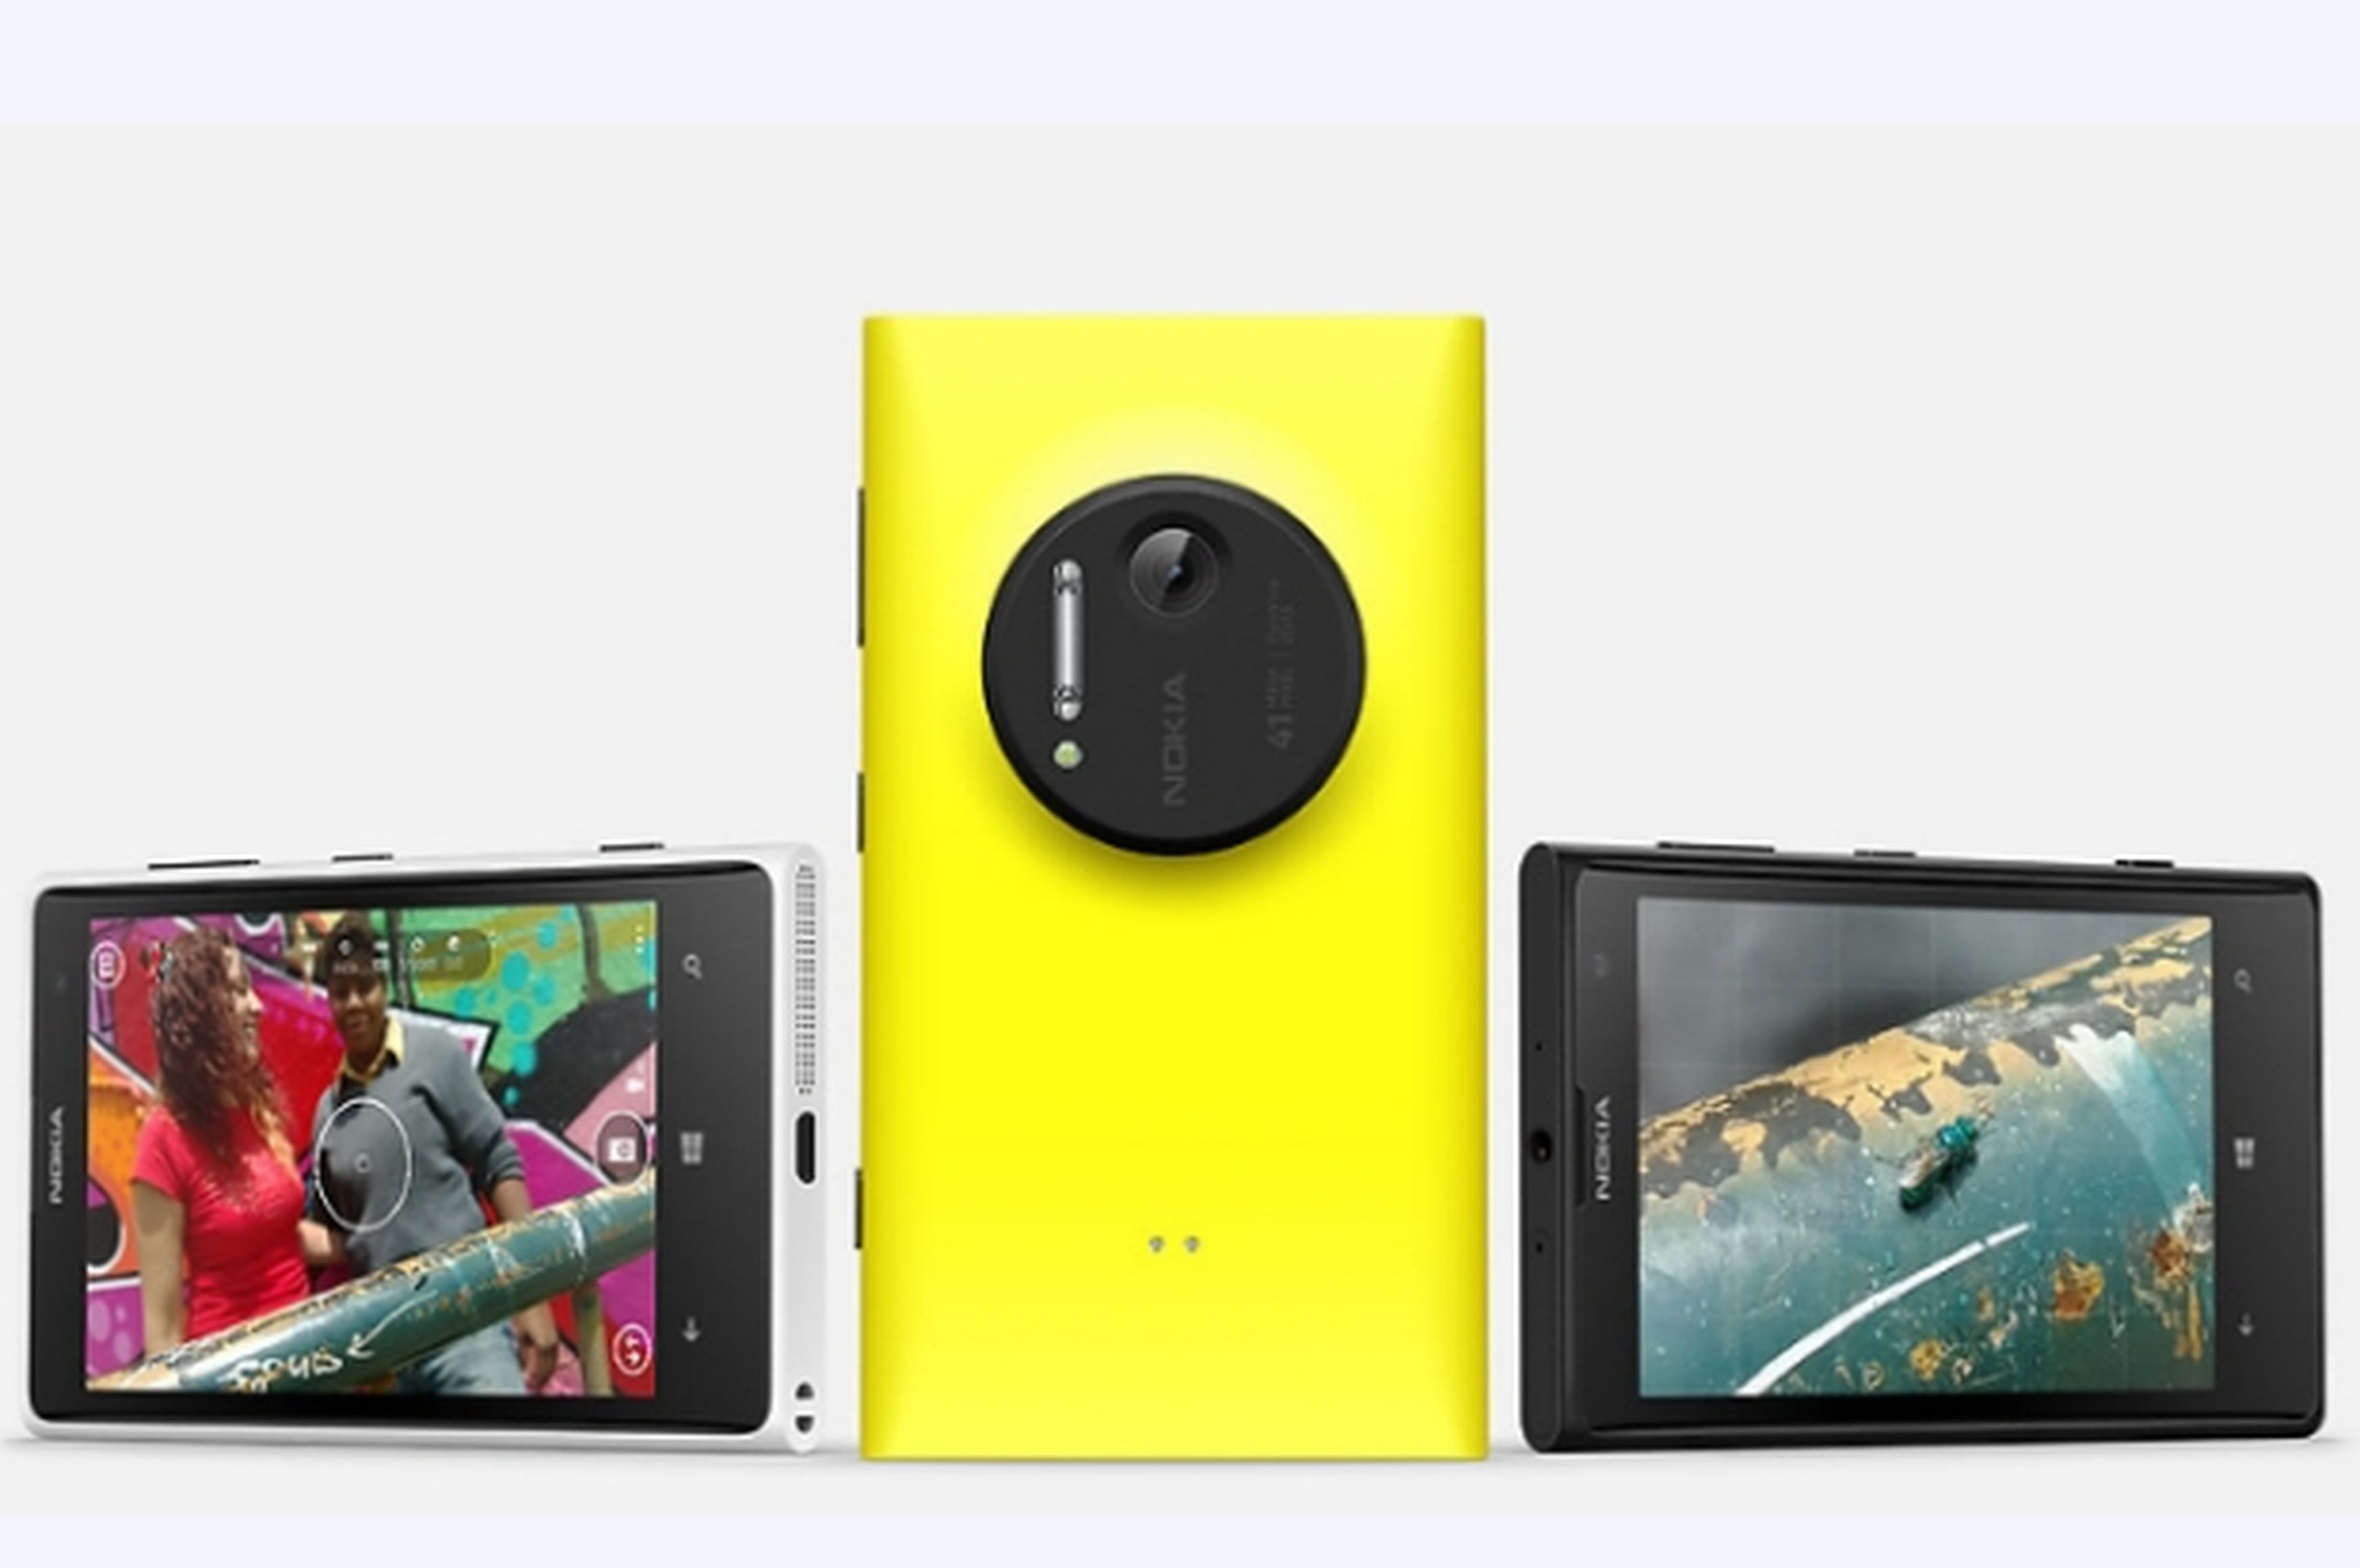 Telefónica trae a España en exclusiva el Nokia Lumia 1020 de 64 GB con 4G LTE